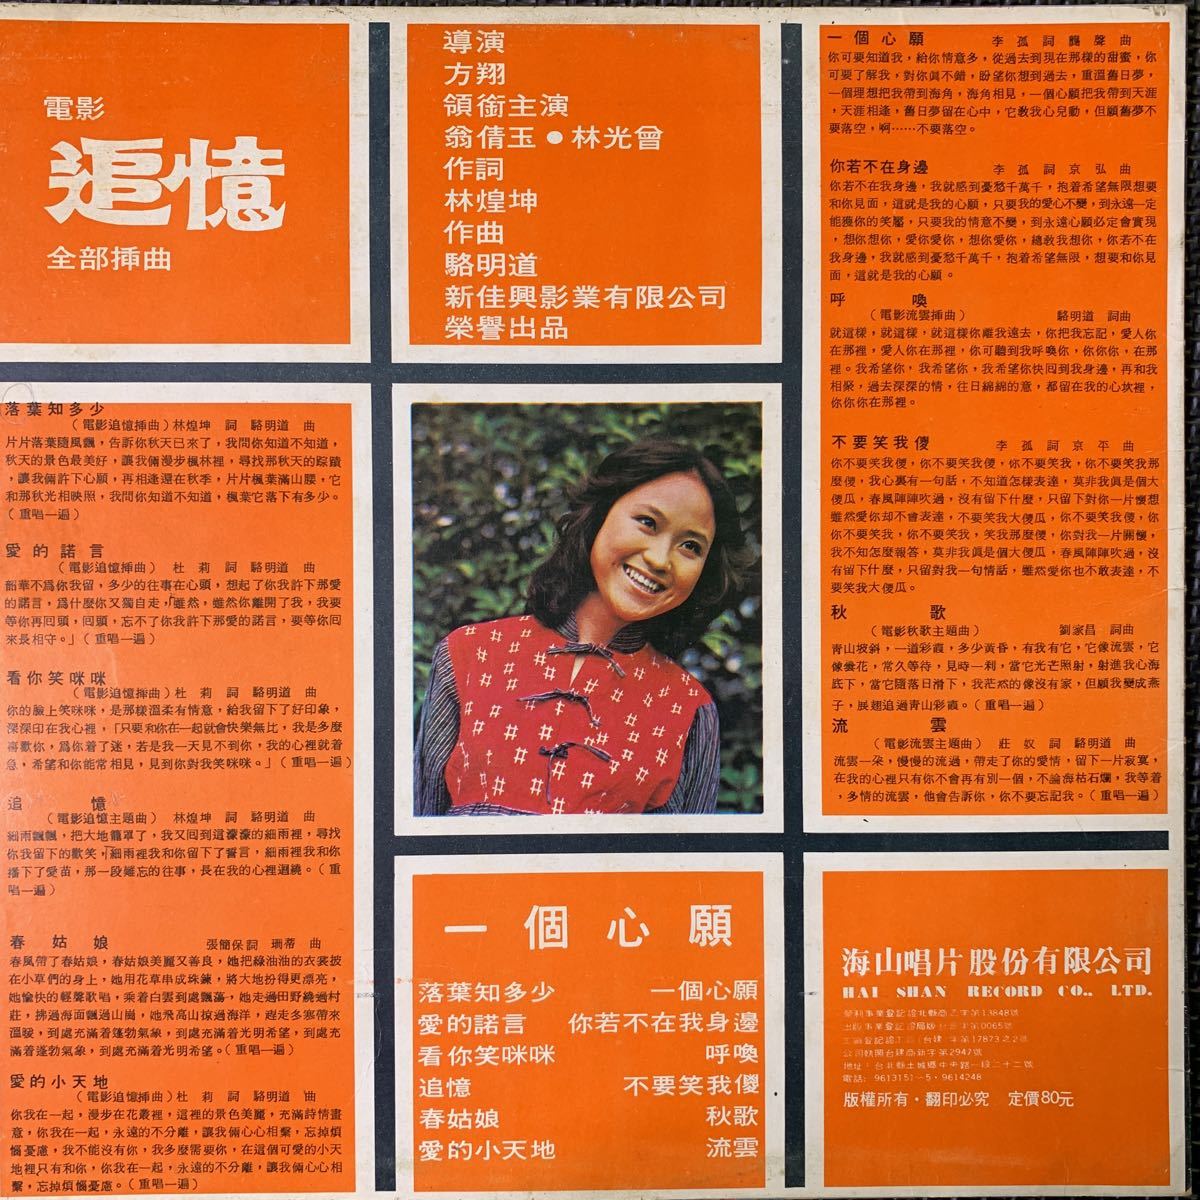 尤雅・You Ya・嵐依風・Lan Yi Feng・電影追憶・落葉知多少・レコード・Vinyl・台湾盤・Taiwan・海山唱片・Hai Shan Records・LS-4015の画像2